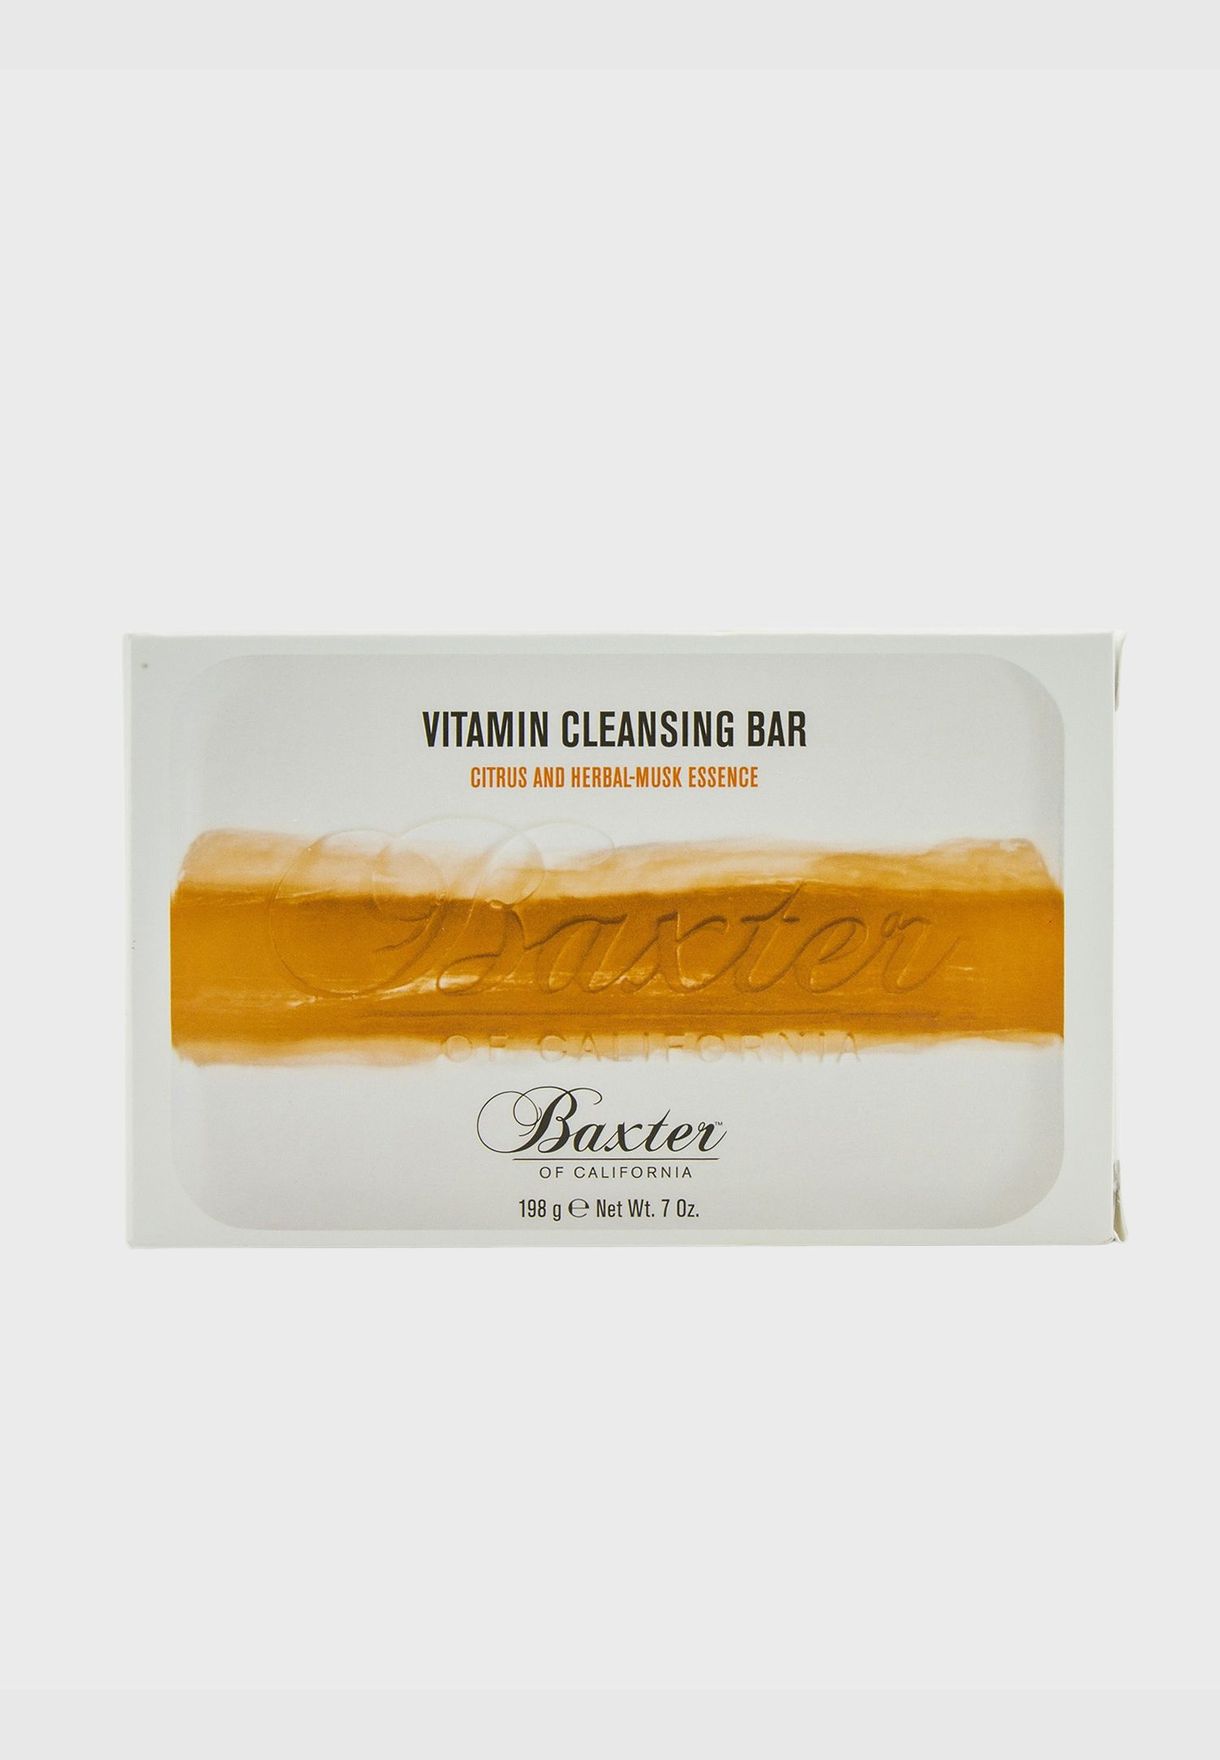 صابون منظف Vitamin (بالحمضيات وخلاصة المسك العشبية)